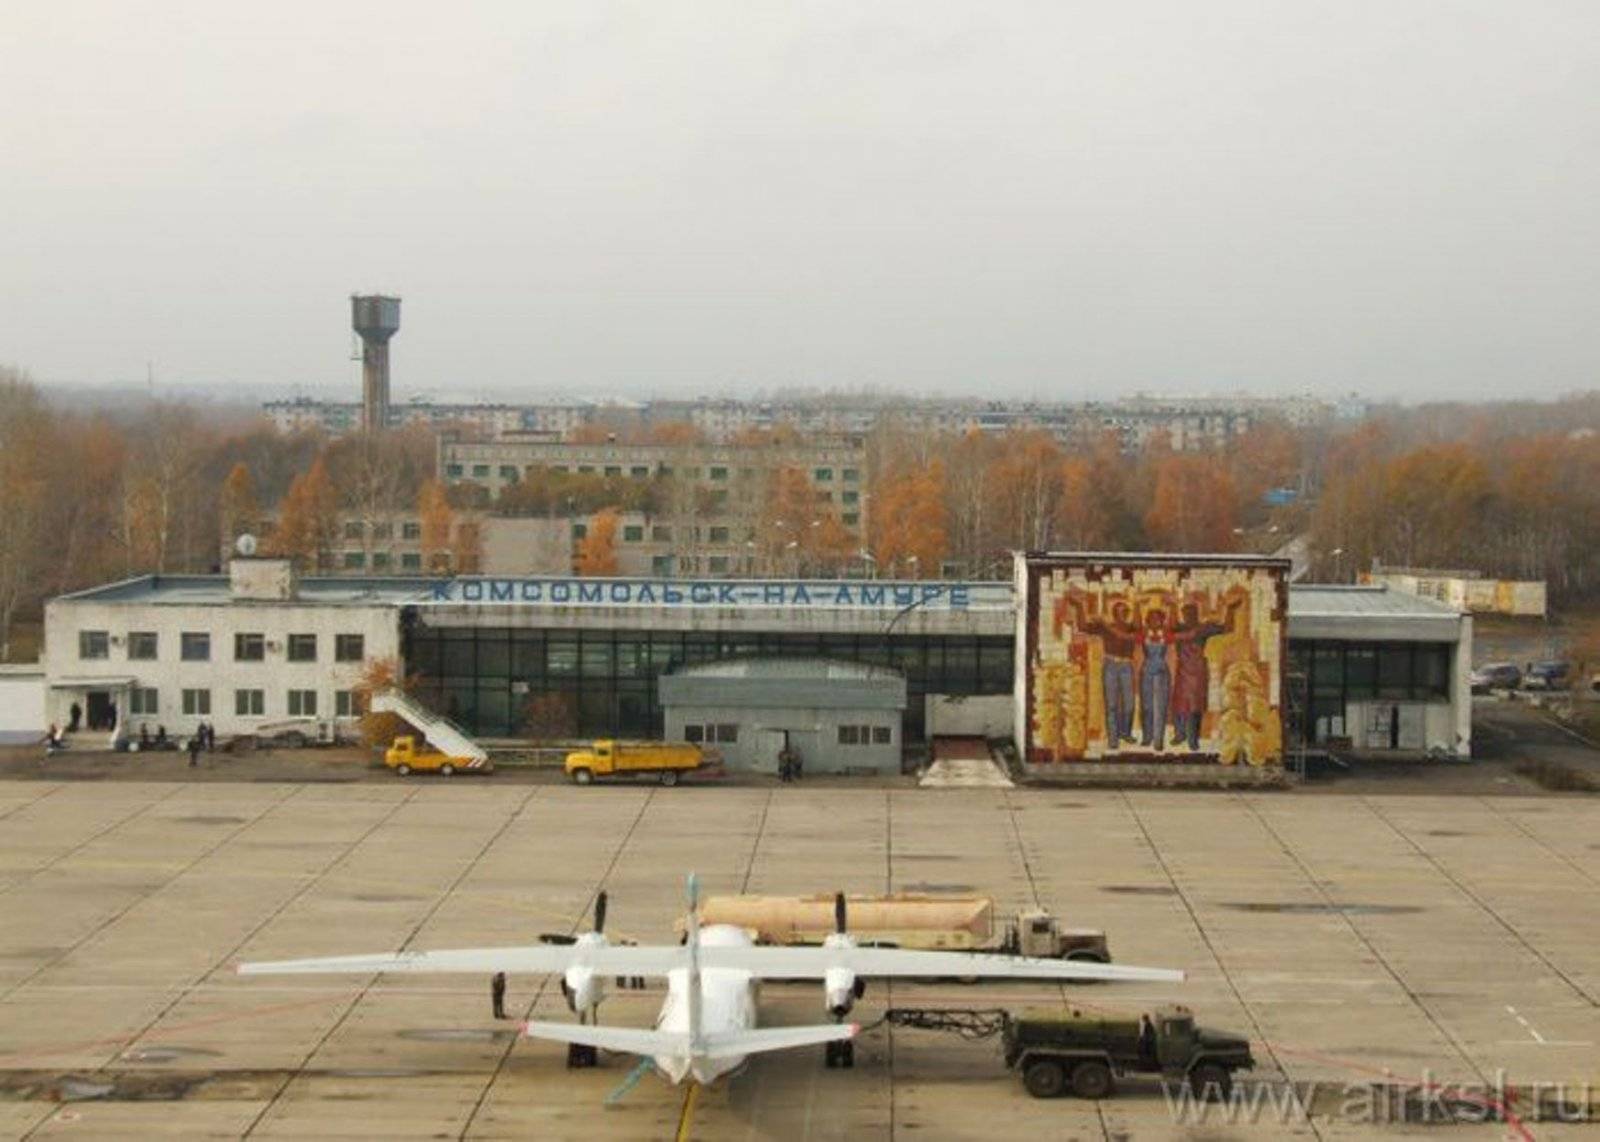 Аэропорт Комсомольск-на-Амуре: официальный сайт, расписание рейсов